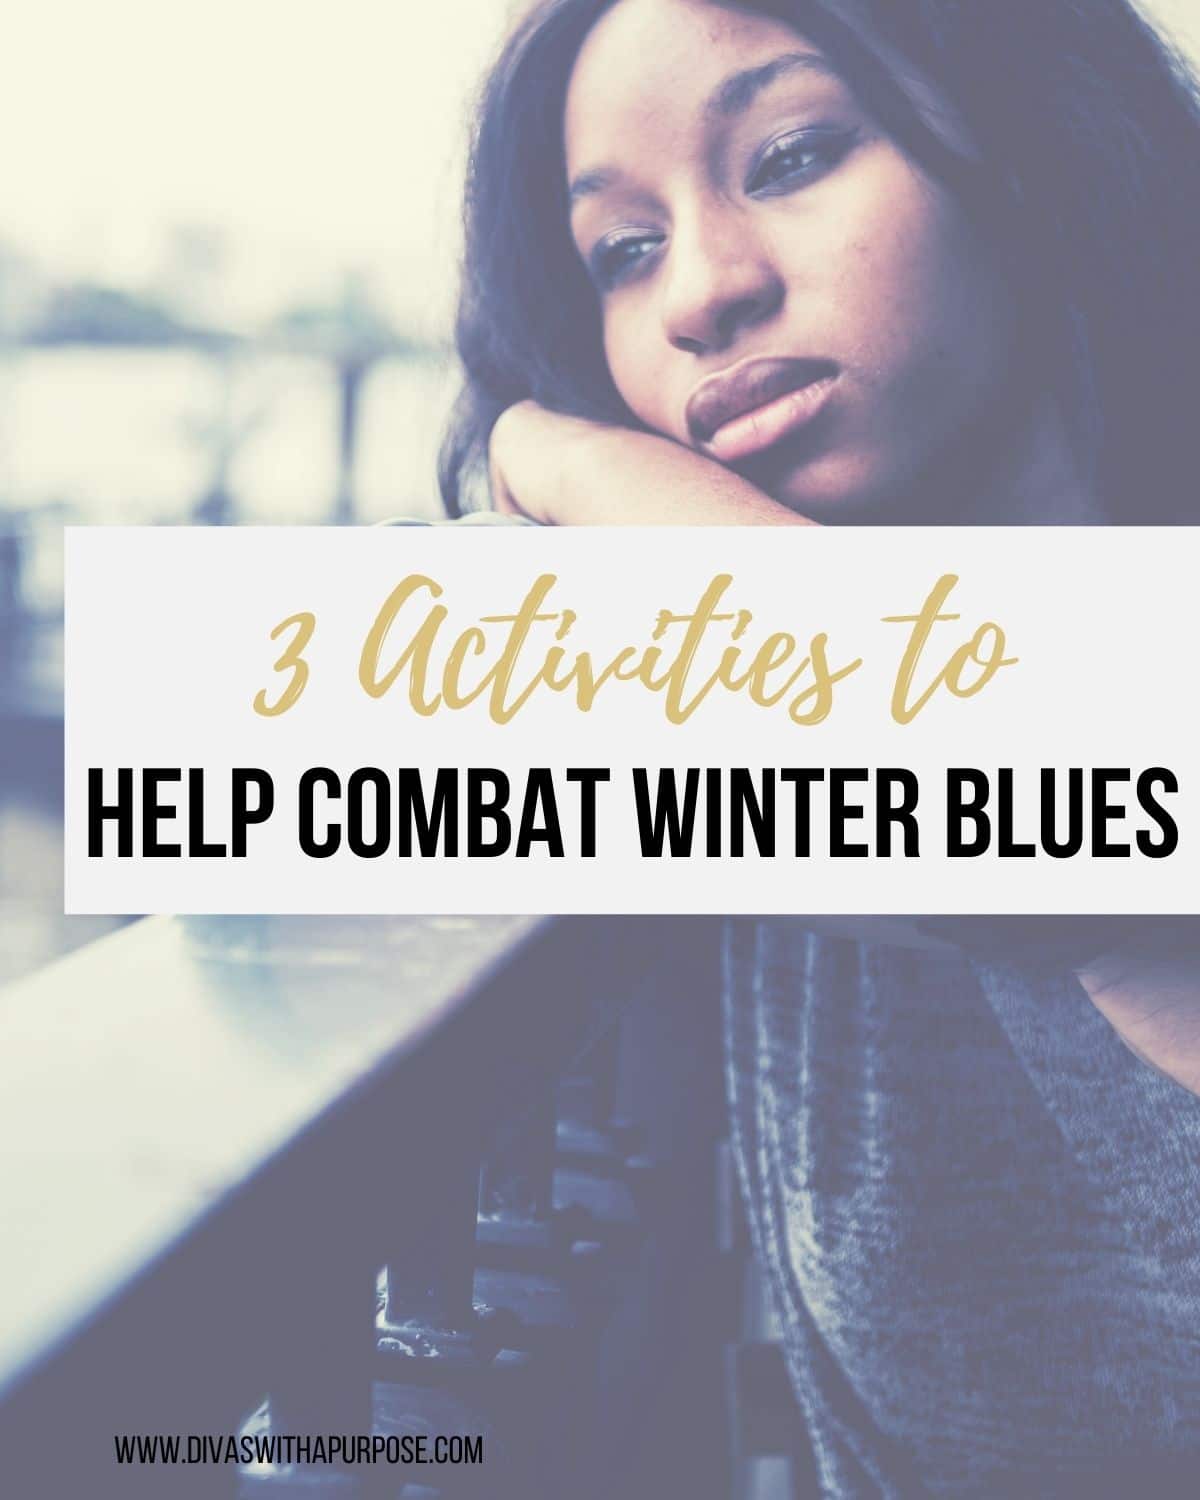 Three Activities to Help Combat Winter Blues